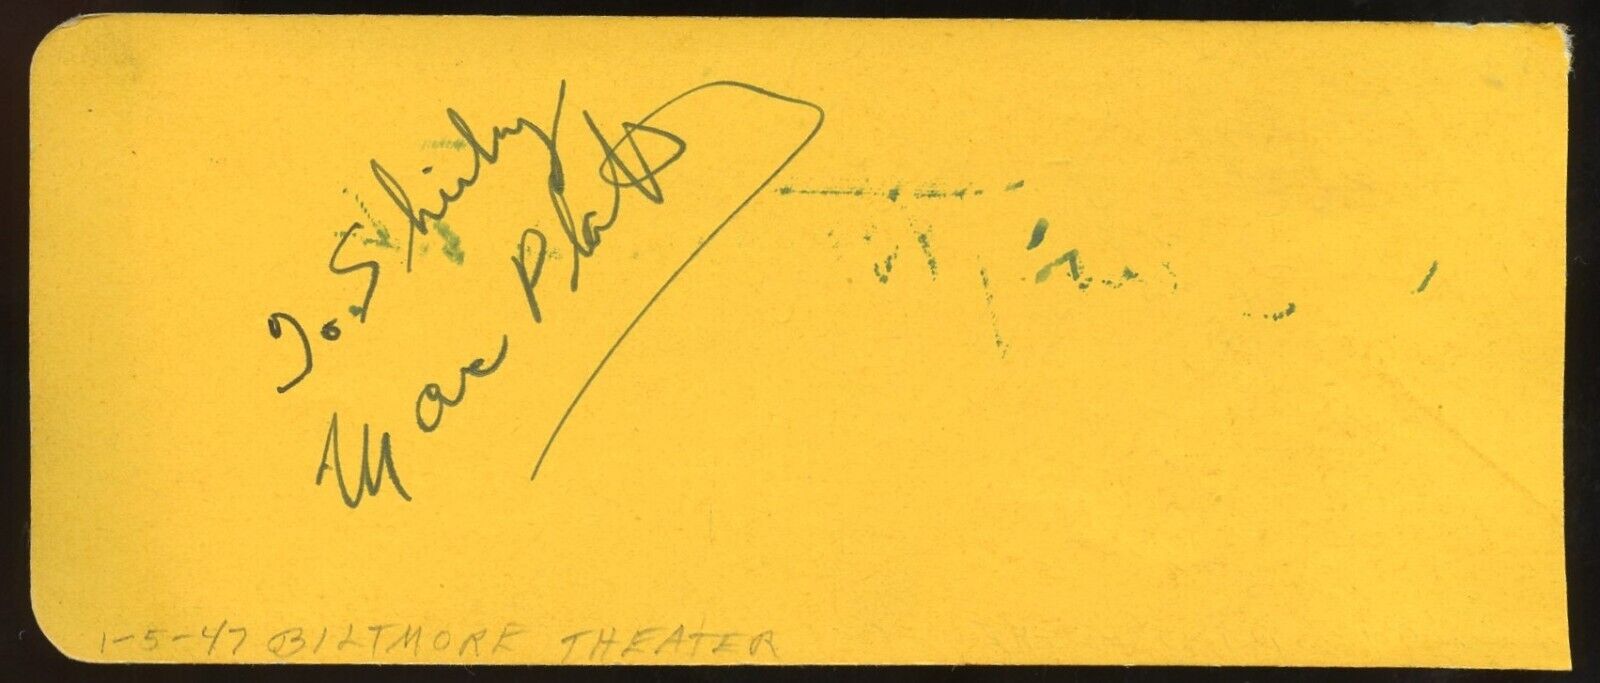 Marc Platt d2014 & Frank McHugh d1981 signed 2x5 autograph on 1-5-47 at Biltmore